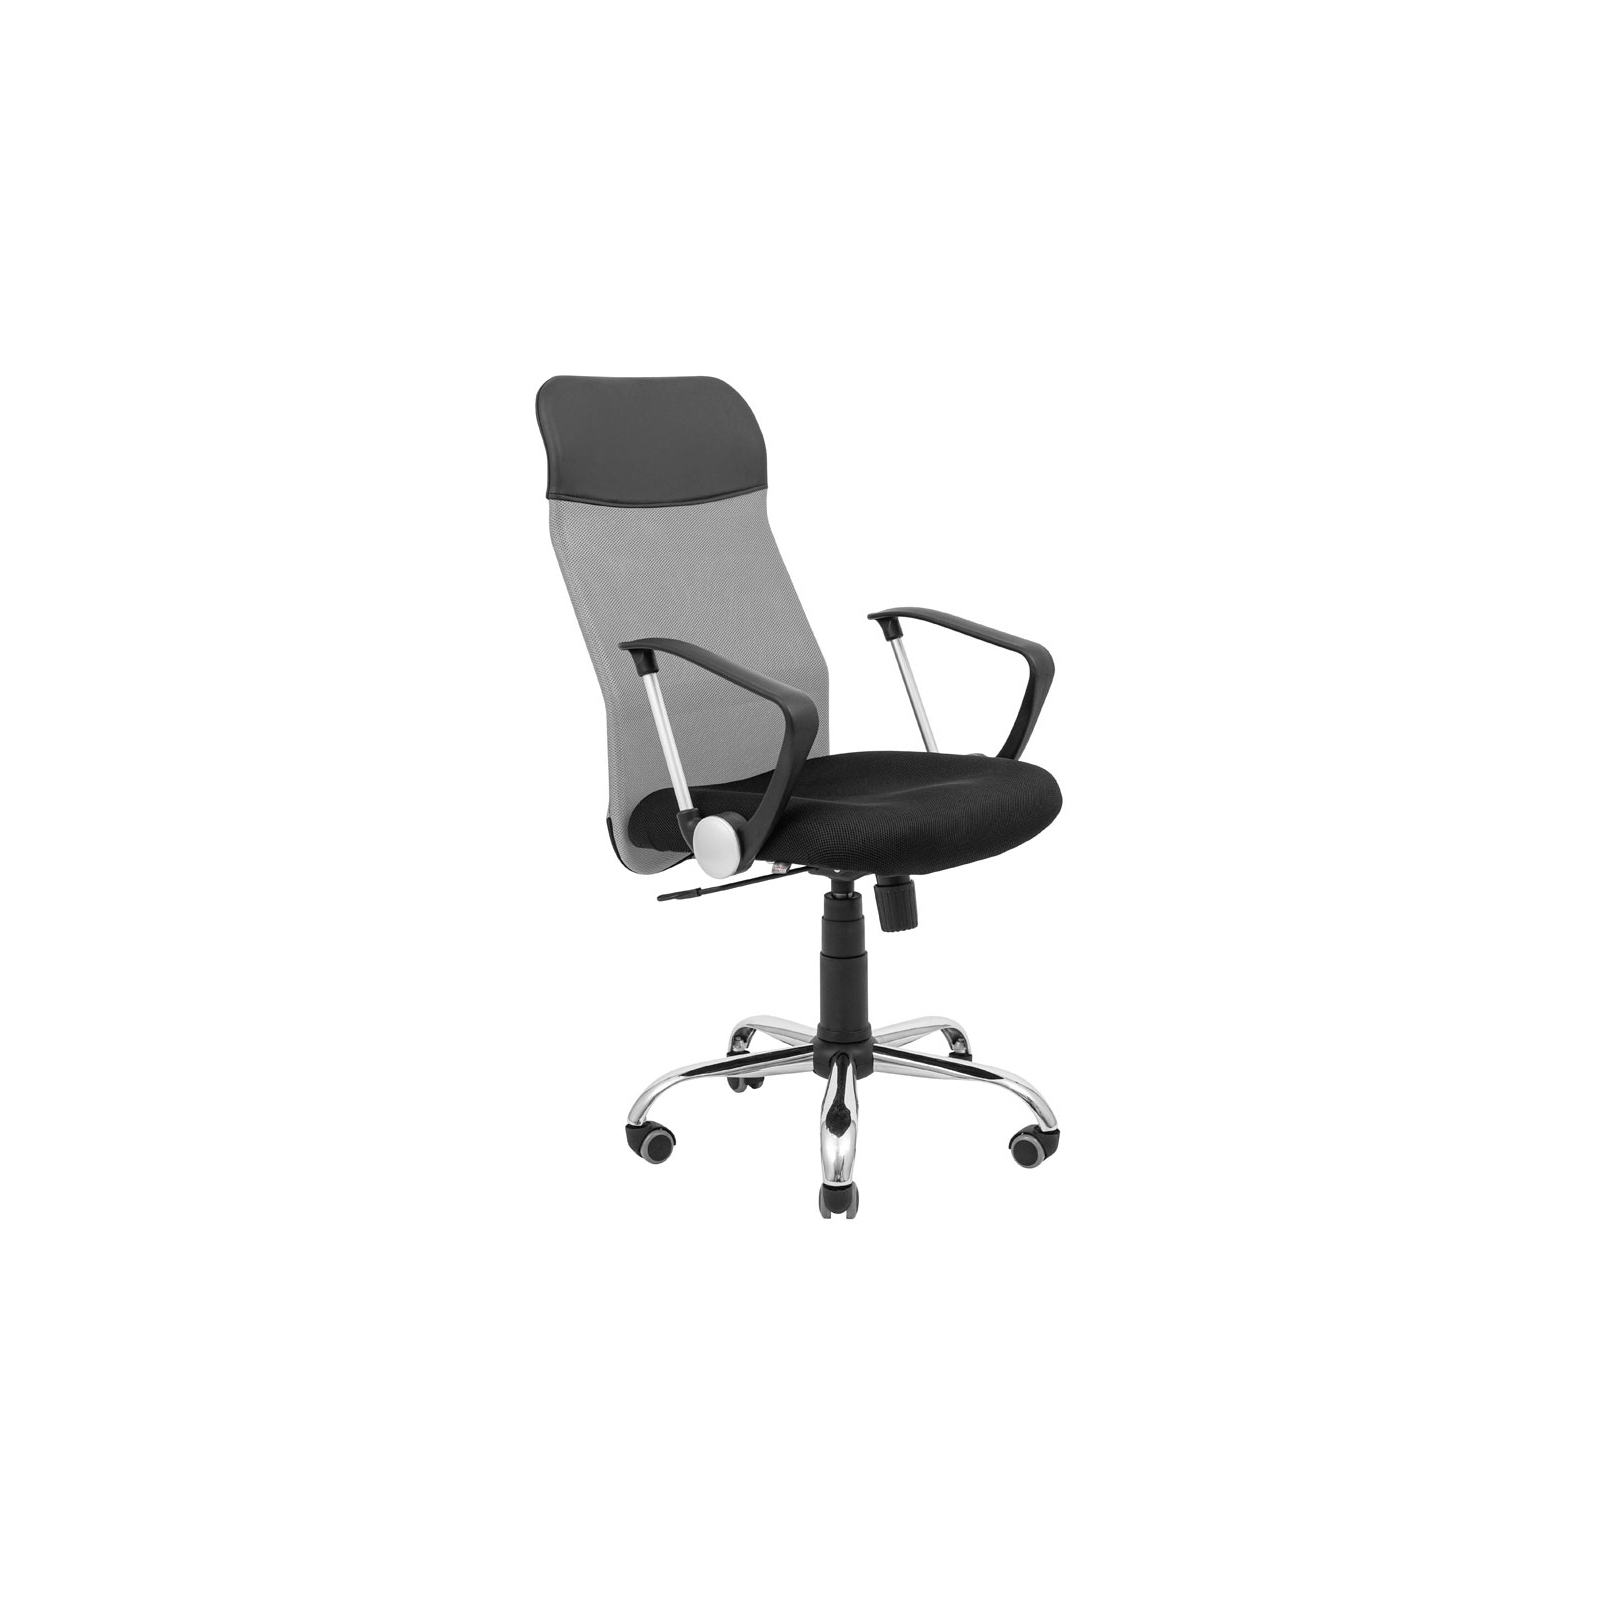 Офисное кресло Richman Ультра Ю Хром M-1 (Tilt) Сетка черная (ADD0003100)